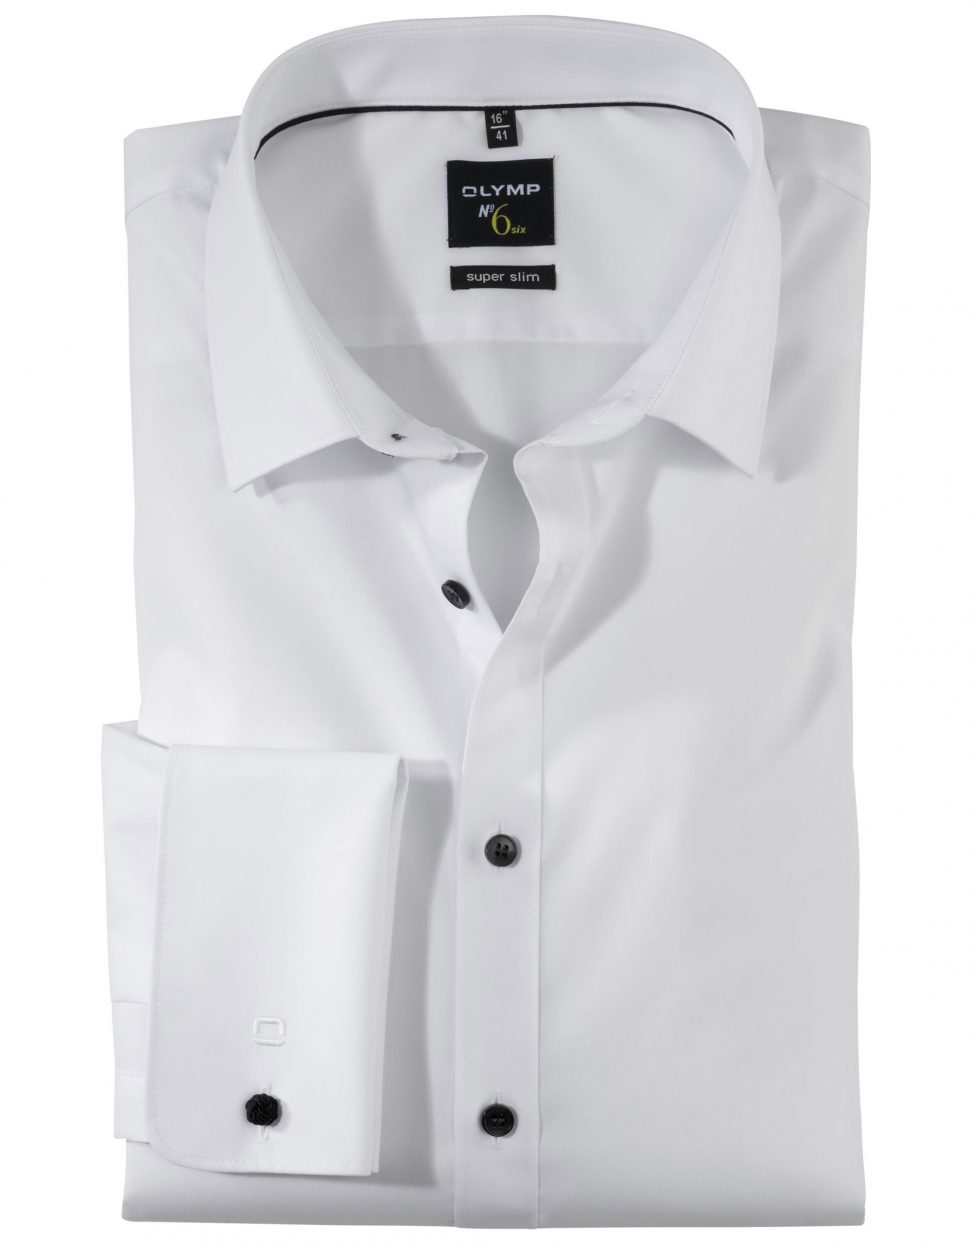 Koszula OLYMP No. Six, super slim,Urban Kent ,biała skw  04386500